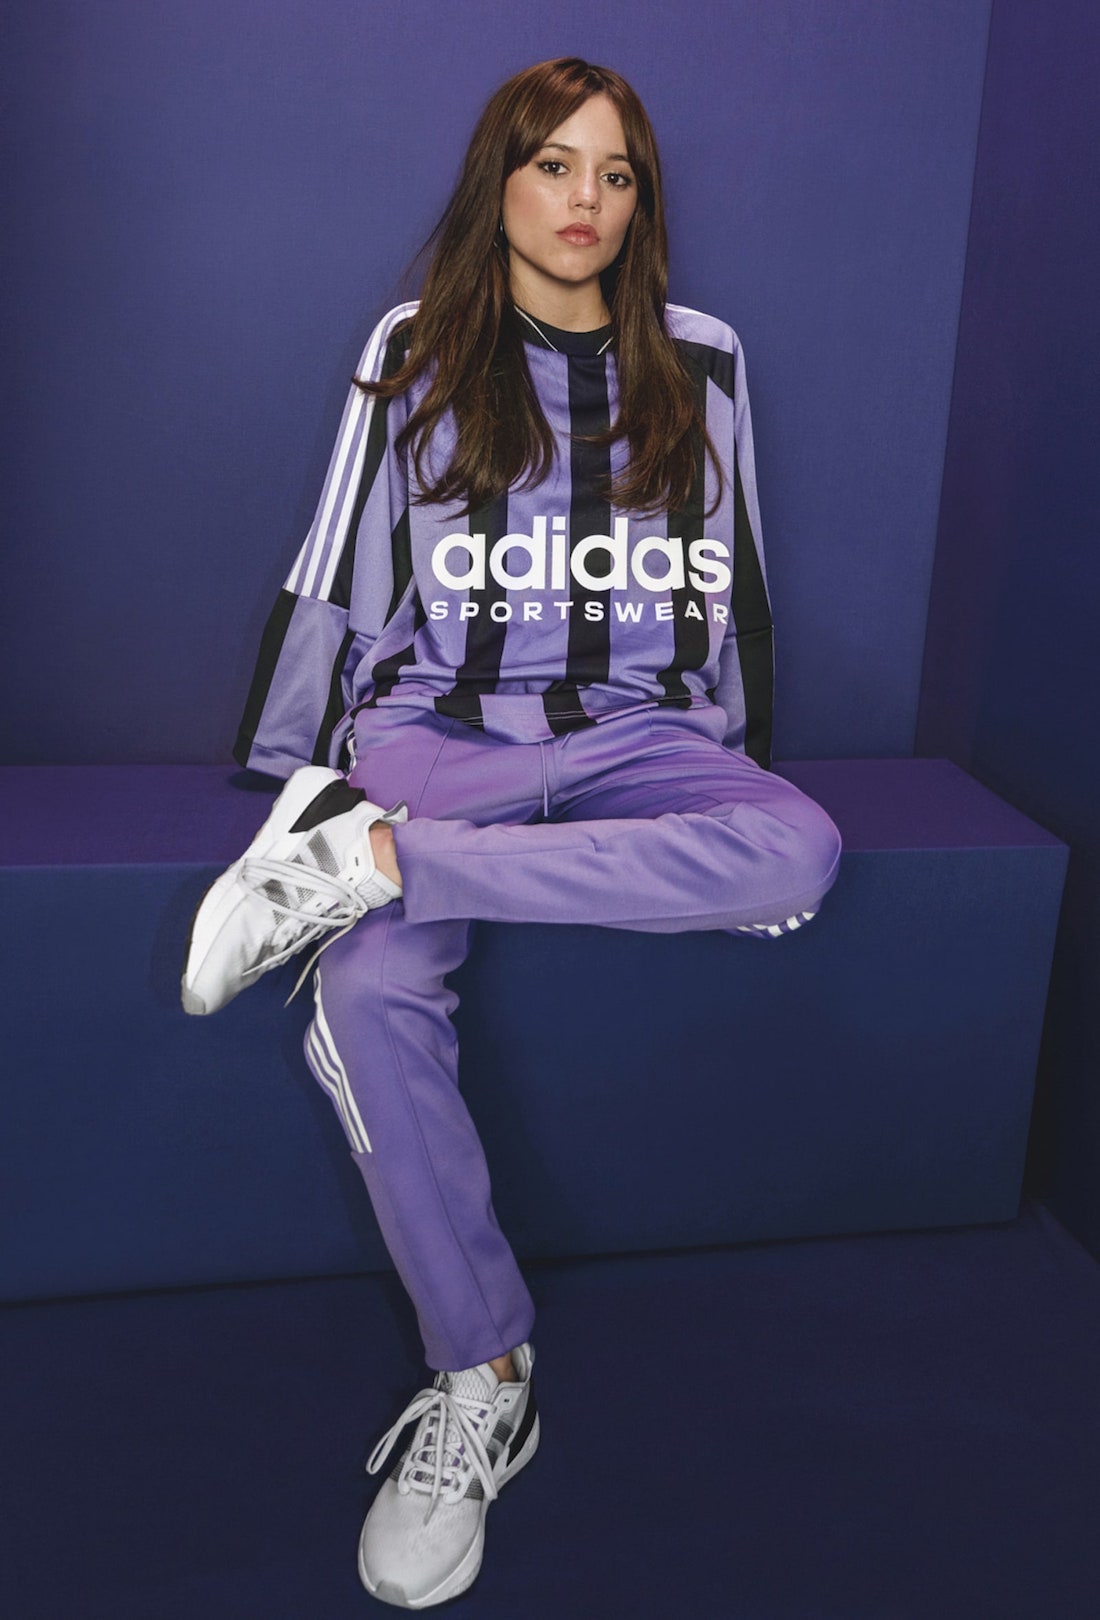 「星期三」珍娜·奥尔特加与 adidas 达成合作伙伴关系